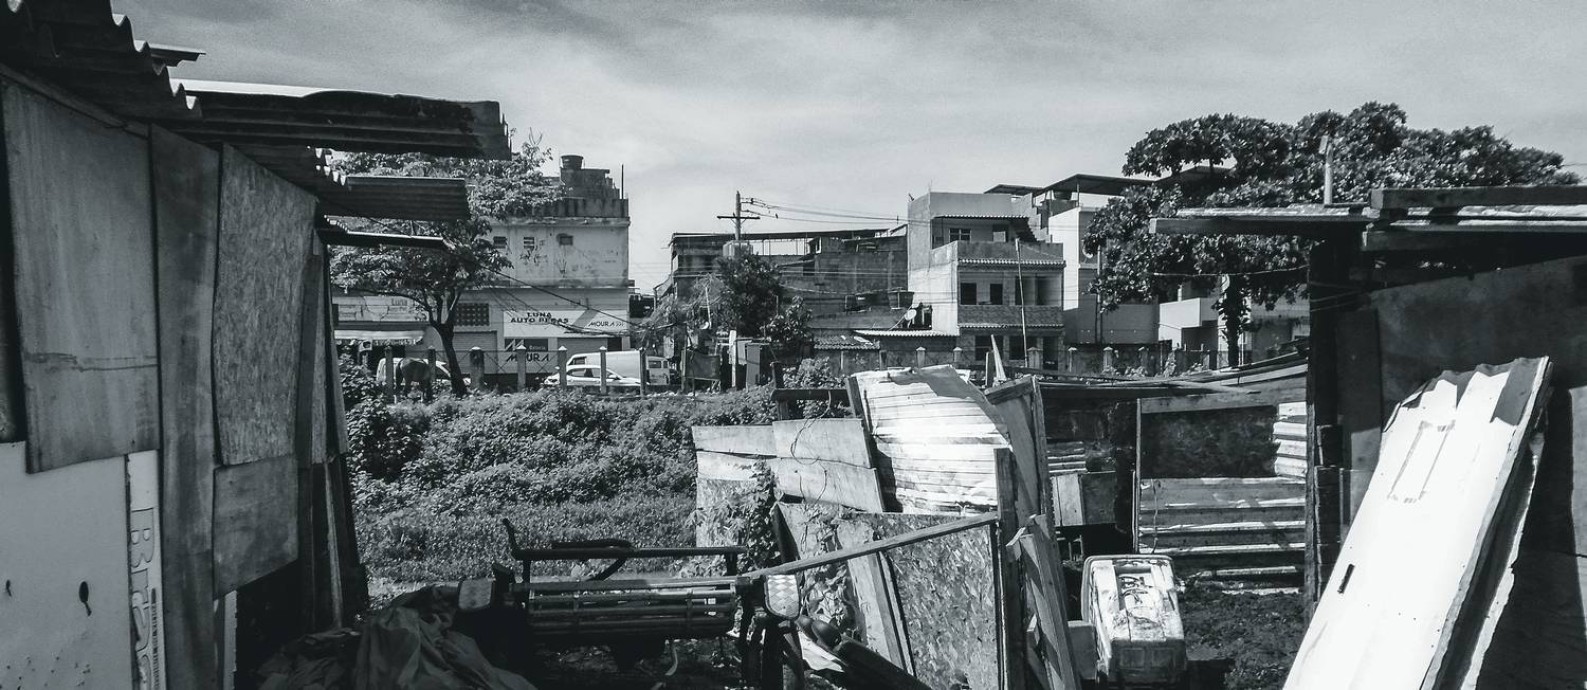 O Complexo da Maré abriga 130 mil moradores em um conjunto de 16 favelas entre a Avenida Brasil e a Linha Vermelha, os dois principais acessos ao Rio de Janeiro. Foto: Kamily Vitória Souza Rodrigues